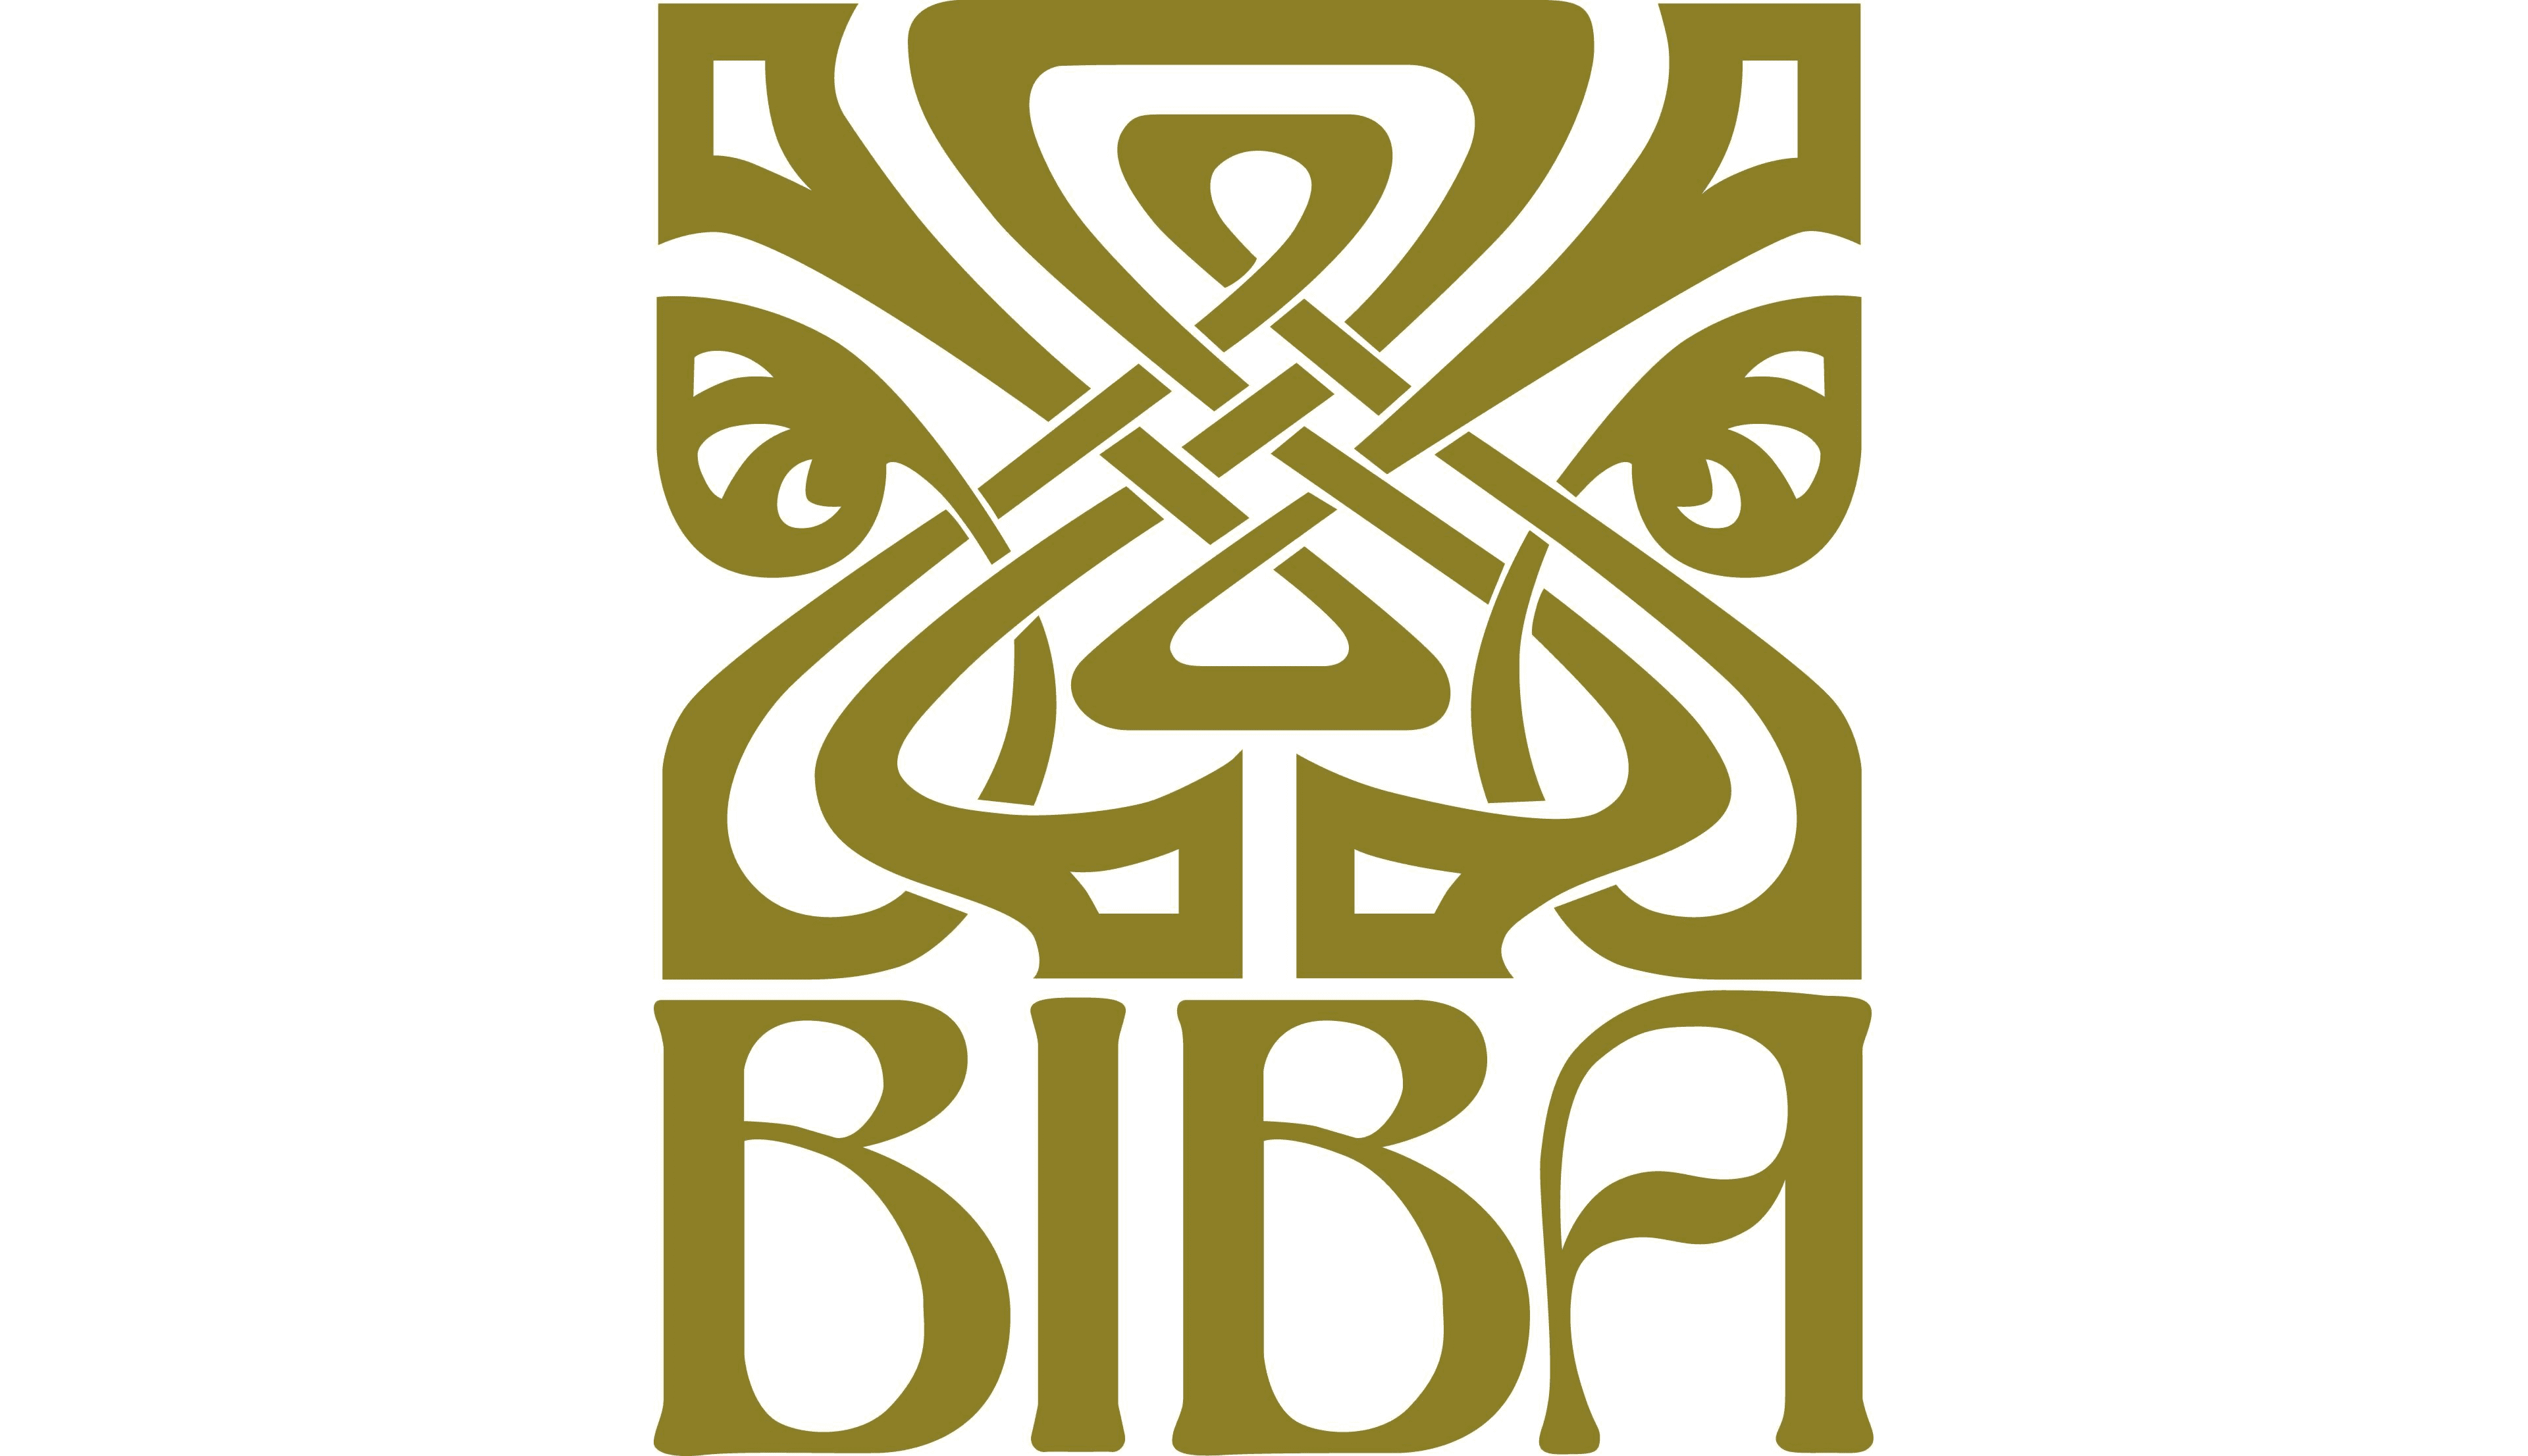 Press Release: Broker Insights joins BIBA as an Associate Member - August  2019 - Broker Insights